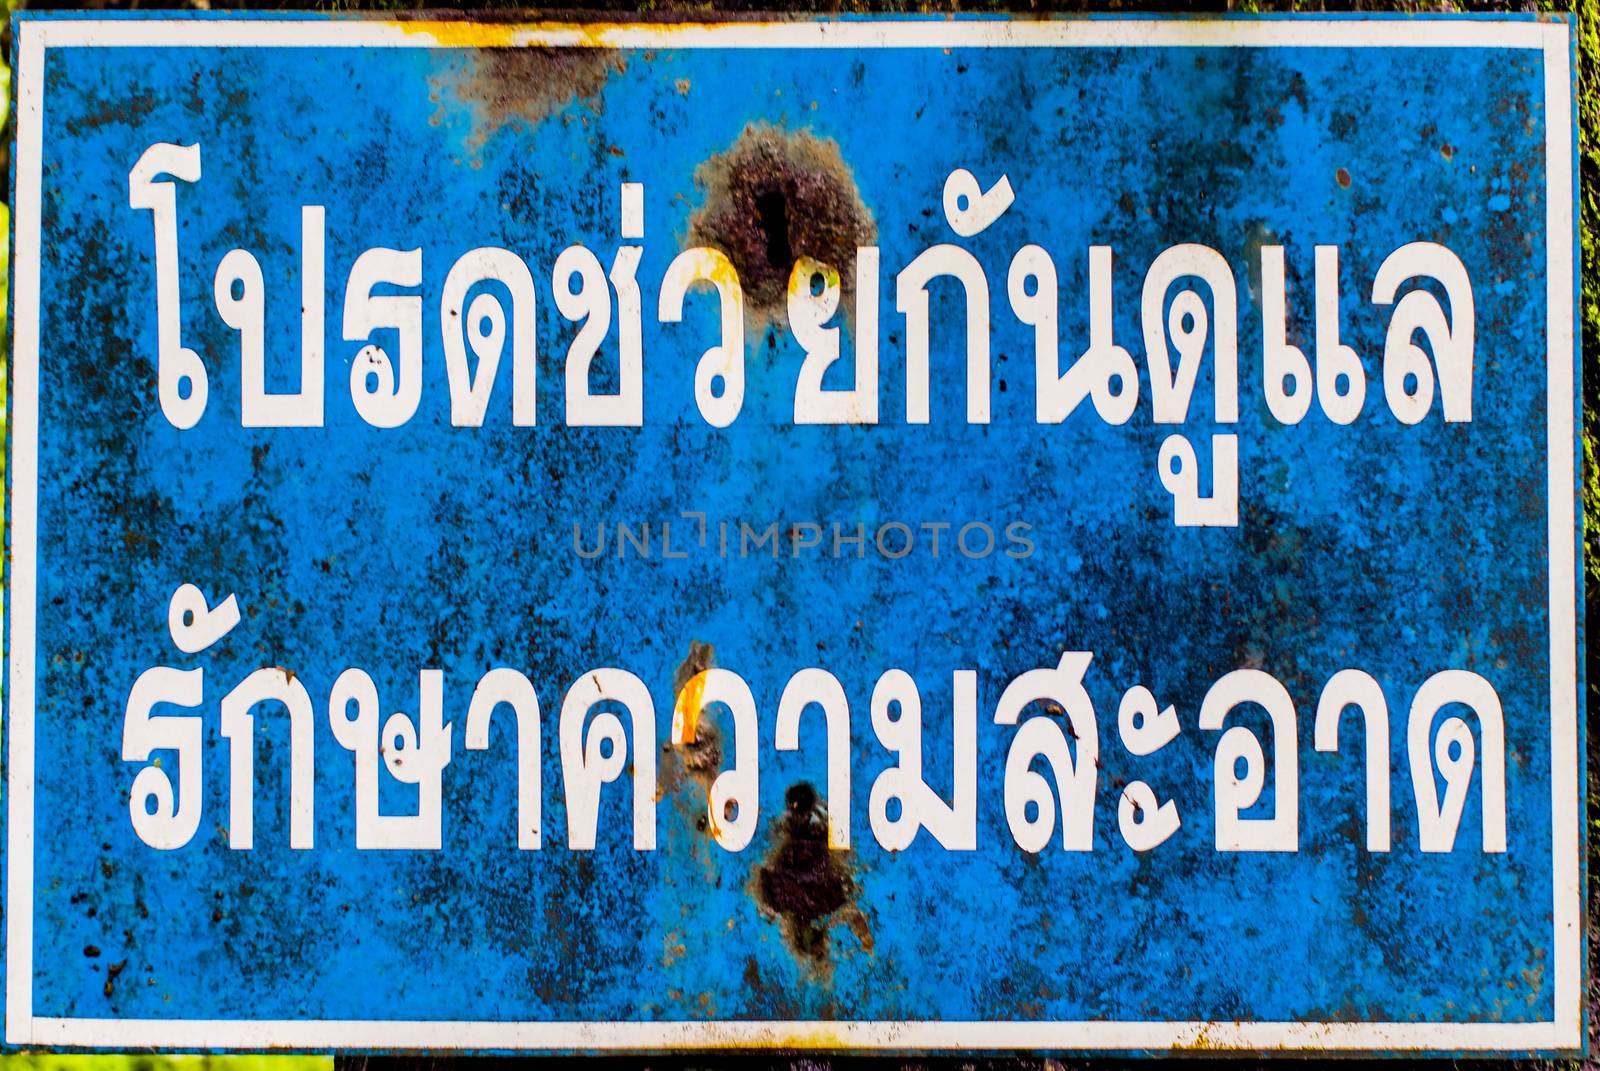 Thai sign means "Please keep clean"